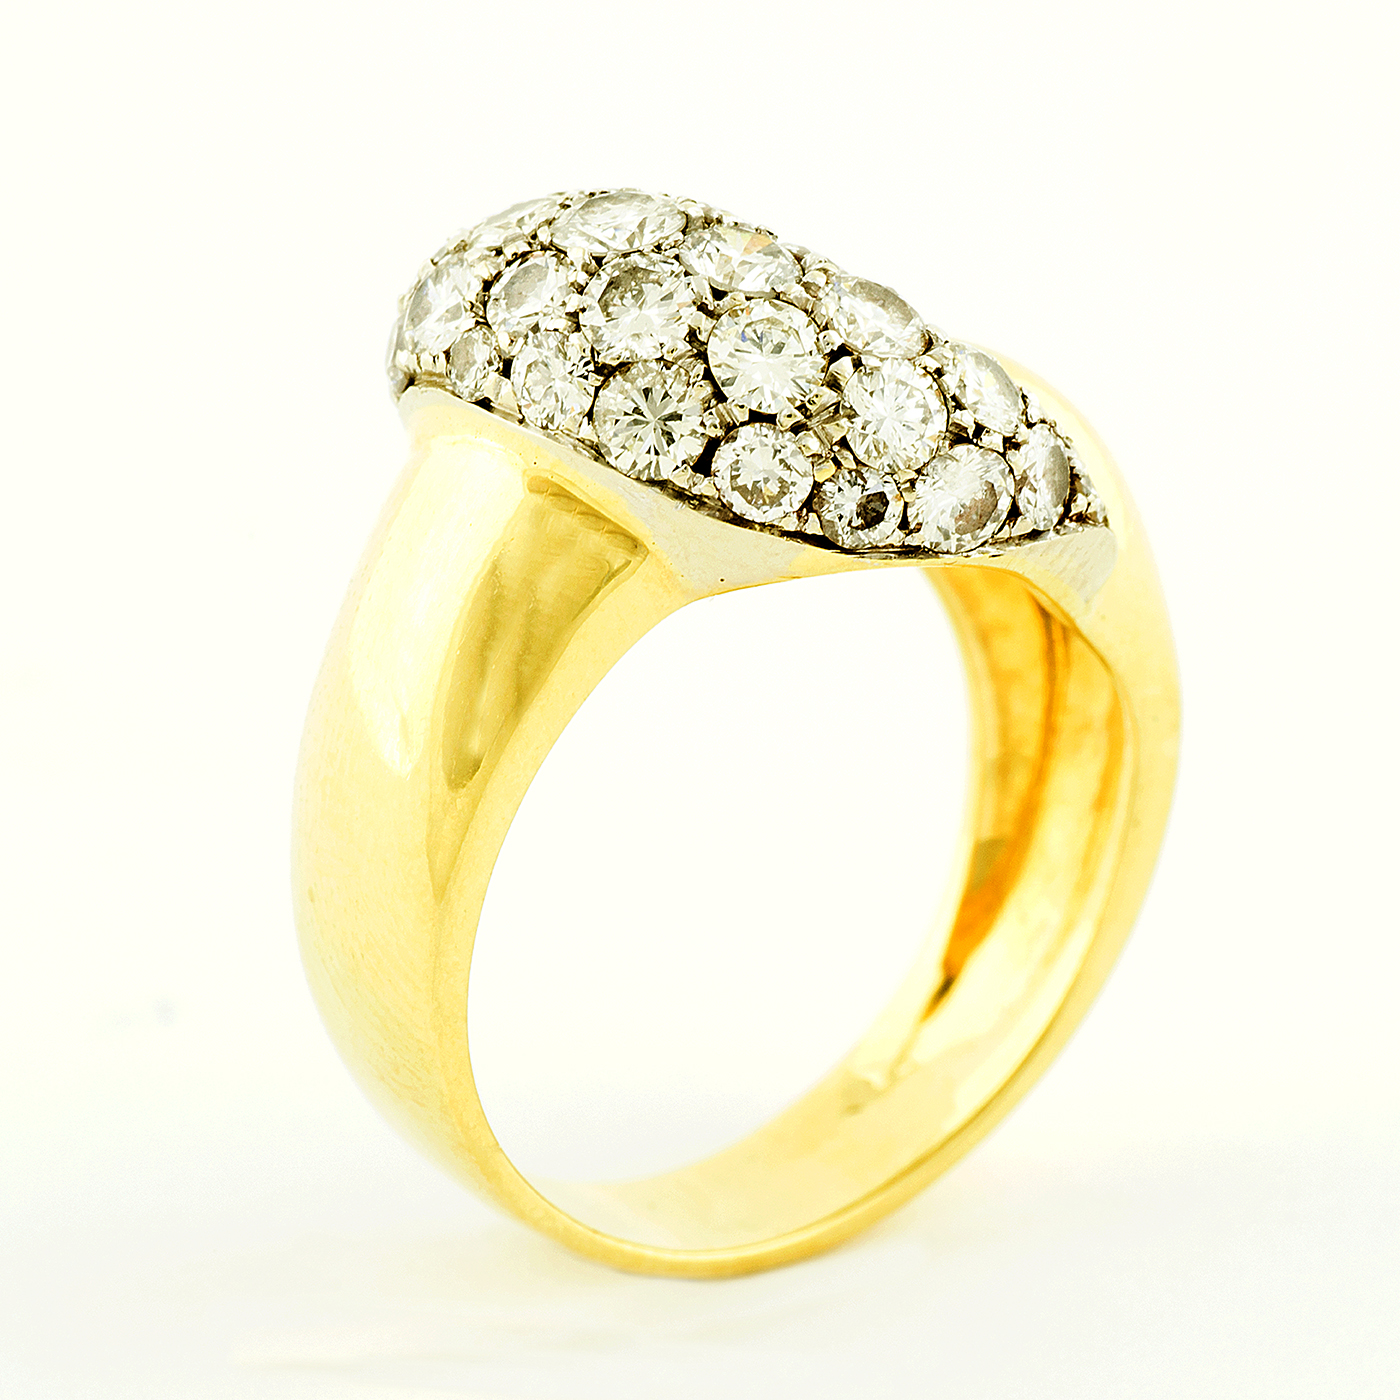 Sortija en Oro Bicolor de 18k cuajada de diamantes talla Brillante de 2,20 ct. J-K/VS1. 8,60 gr.